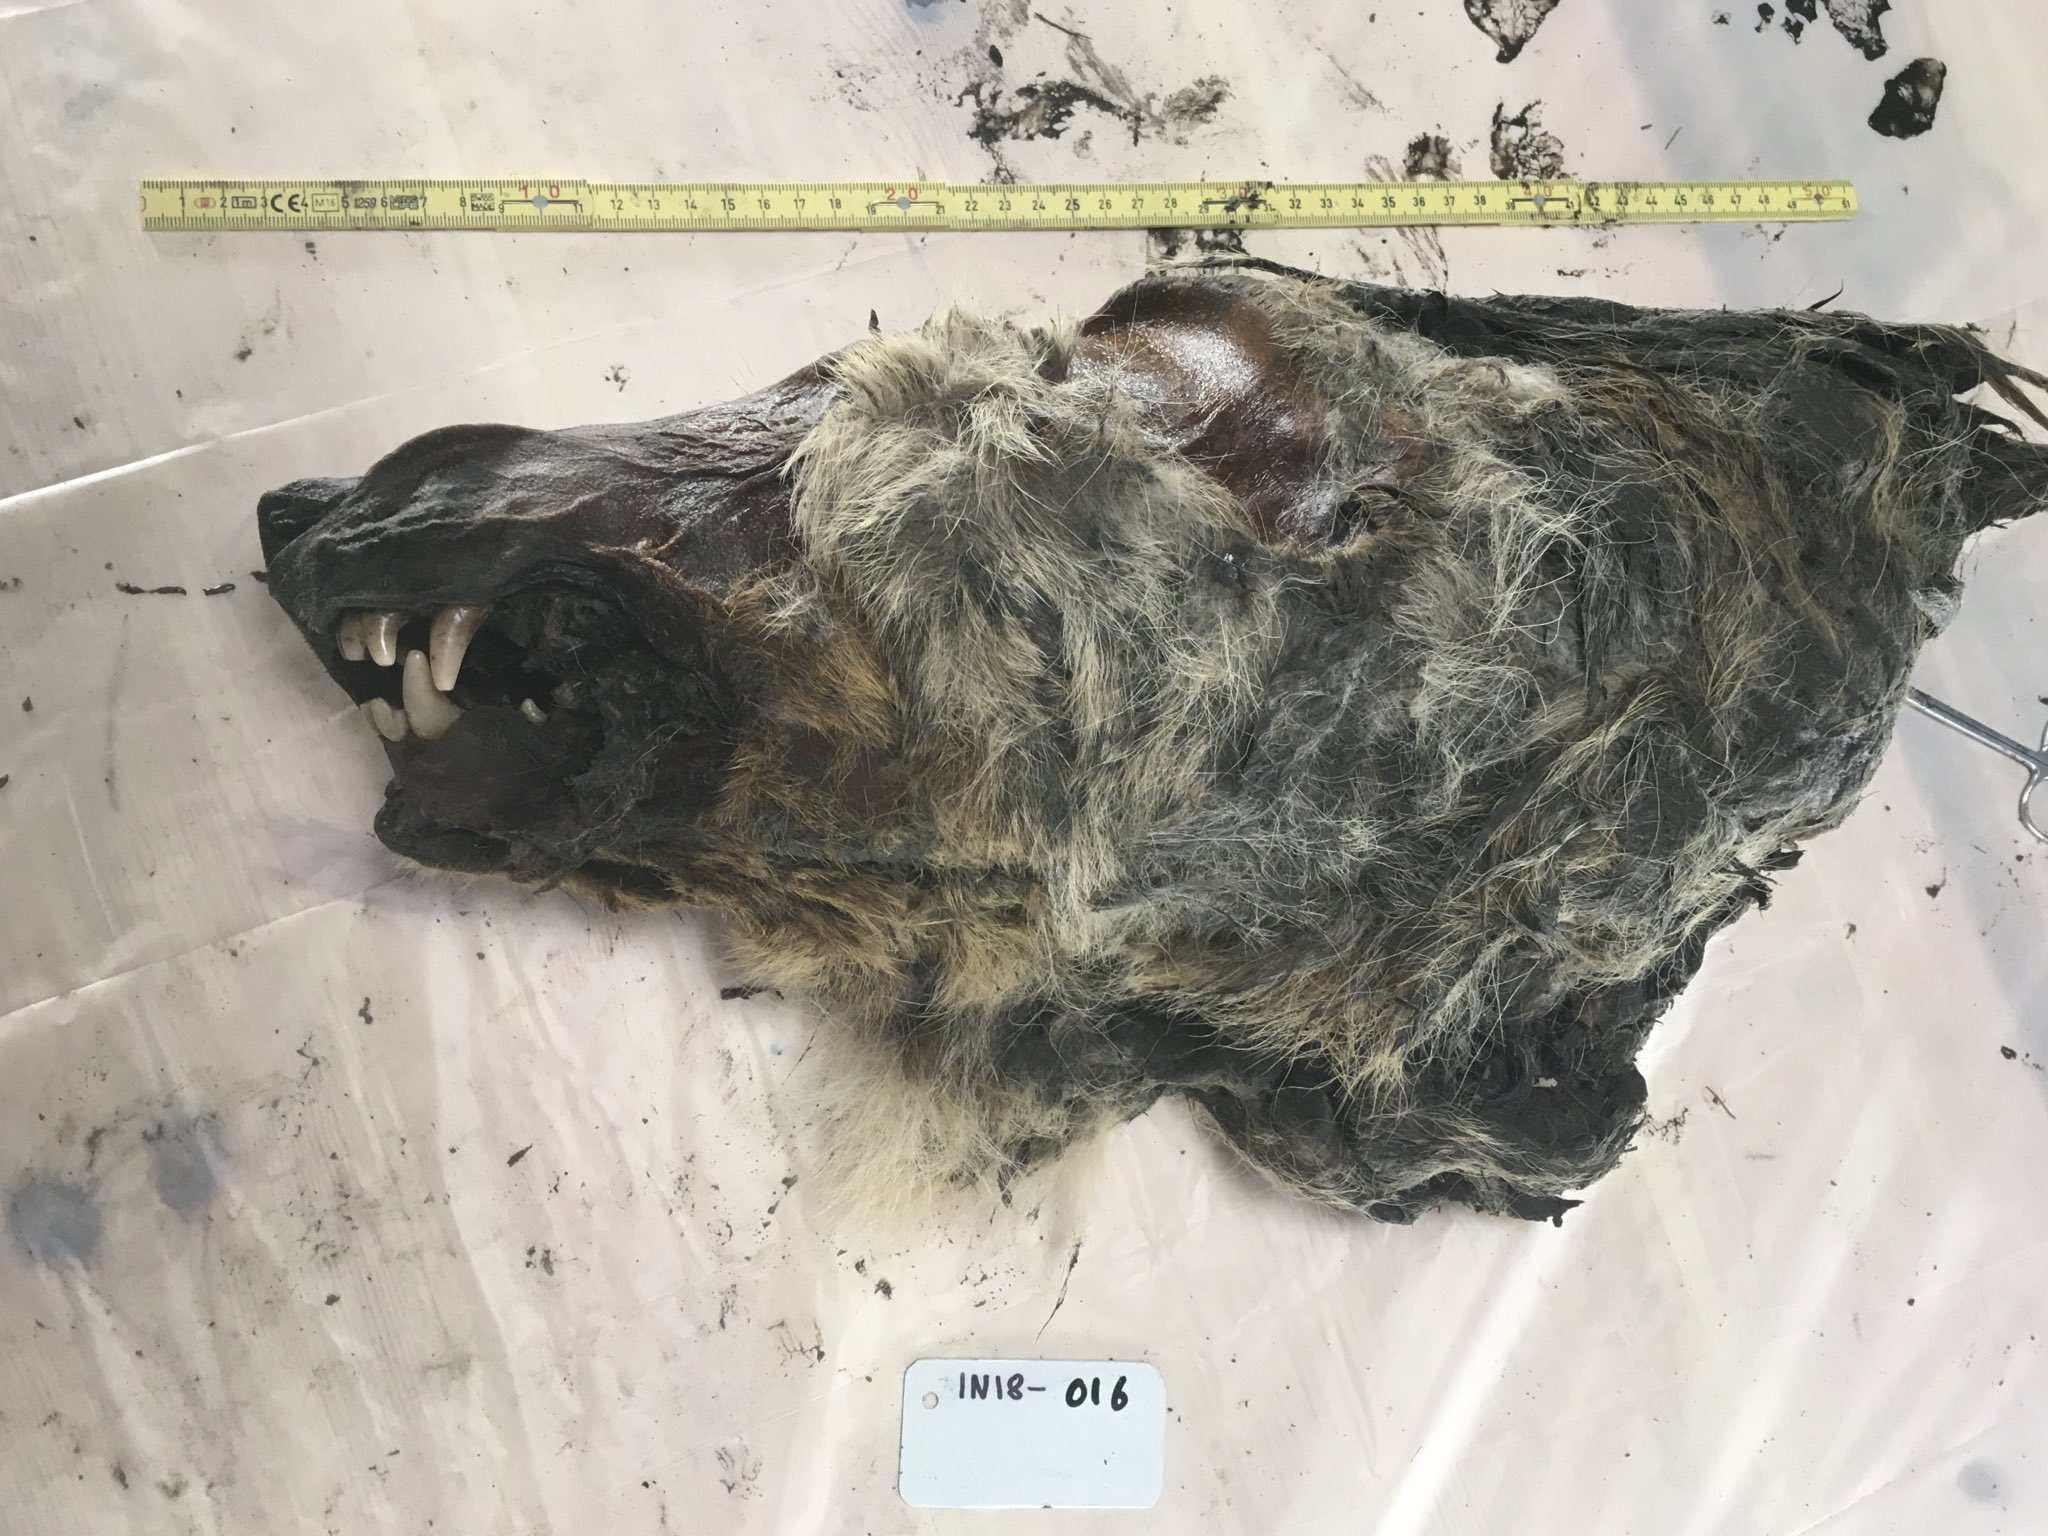 یک سر گرگ 32,000 ساله کاملاً حفظ شده در یخبندان سیبری 1 پیدا شد.